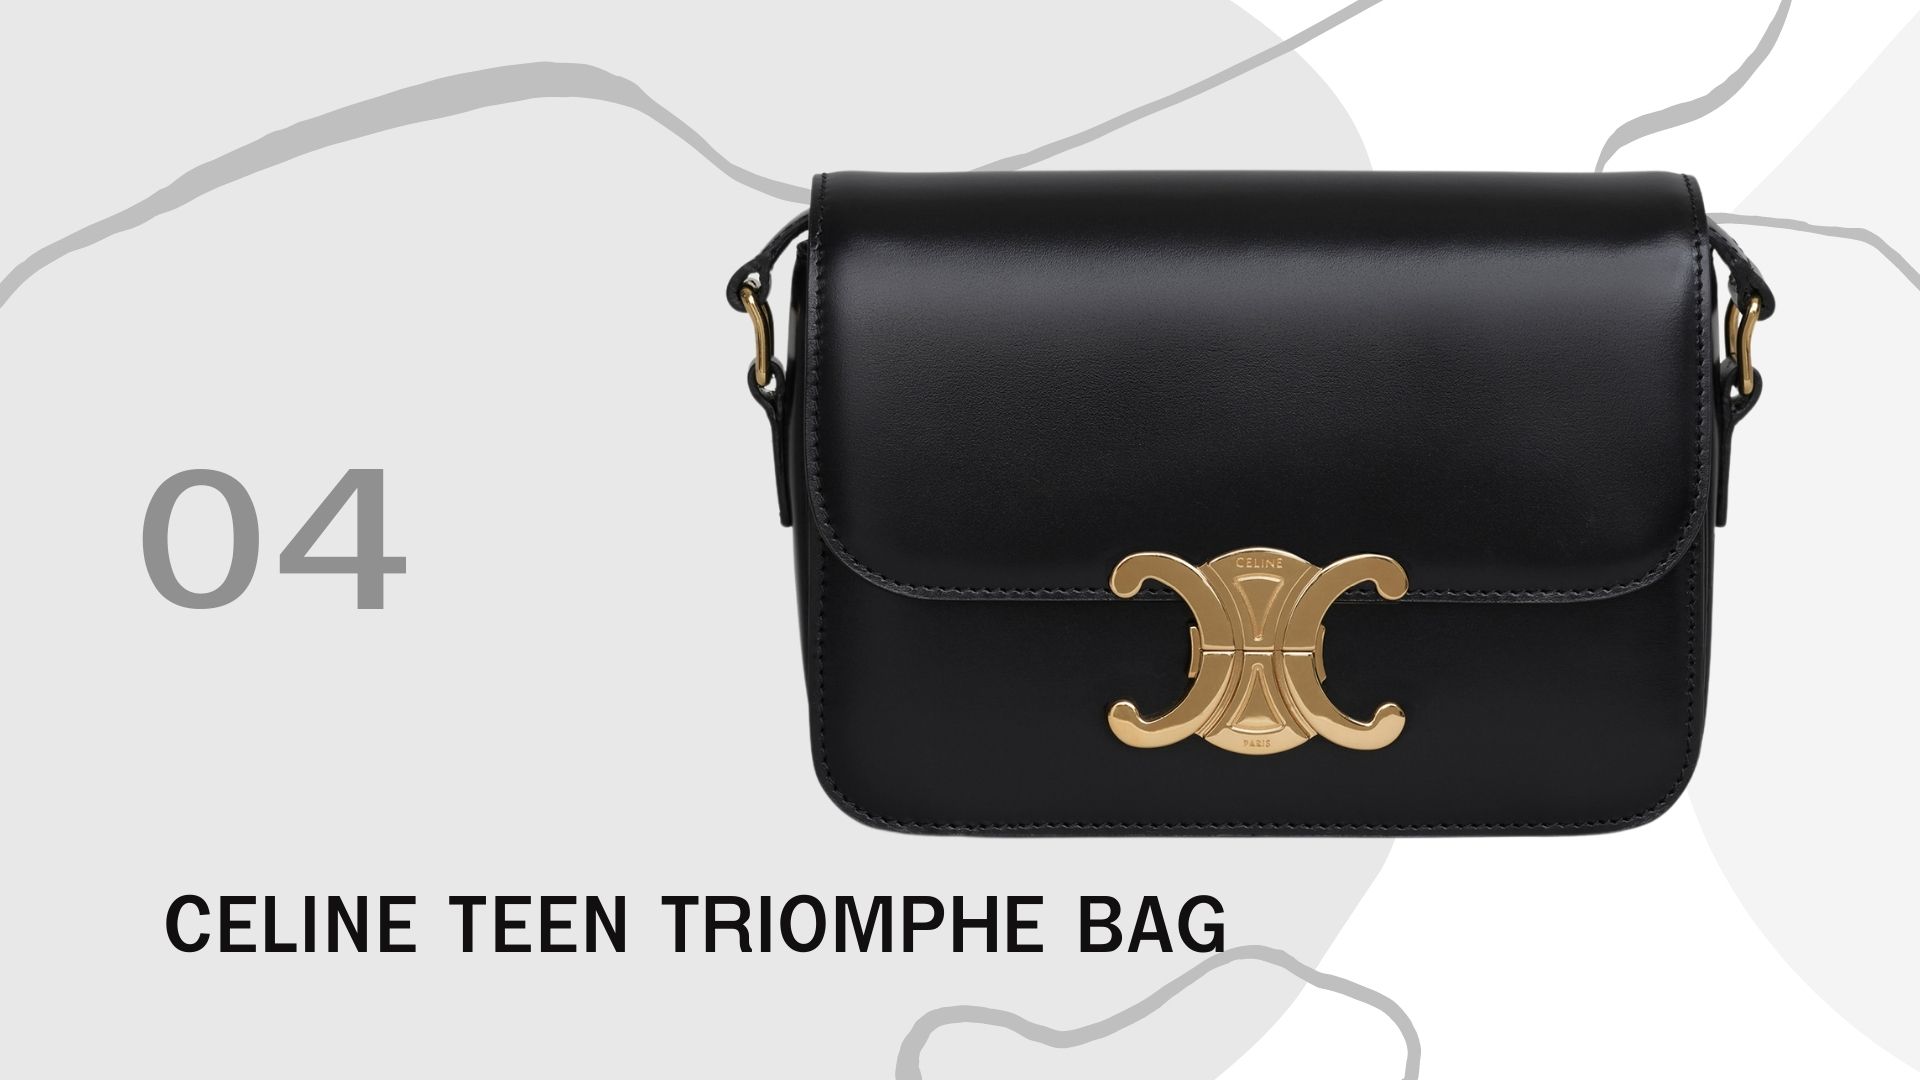 รวม 10 กระเป๋า ที่มาแรงทั้งหมดในปี 2020 นี้ Celine Teen Triomphe Bag